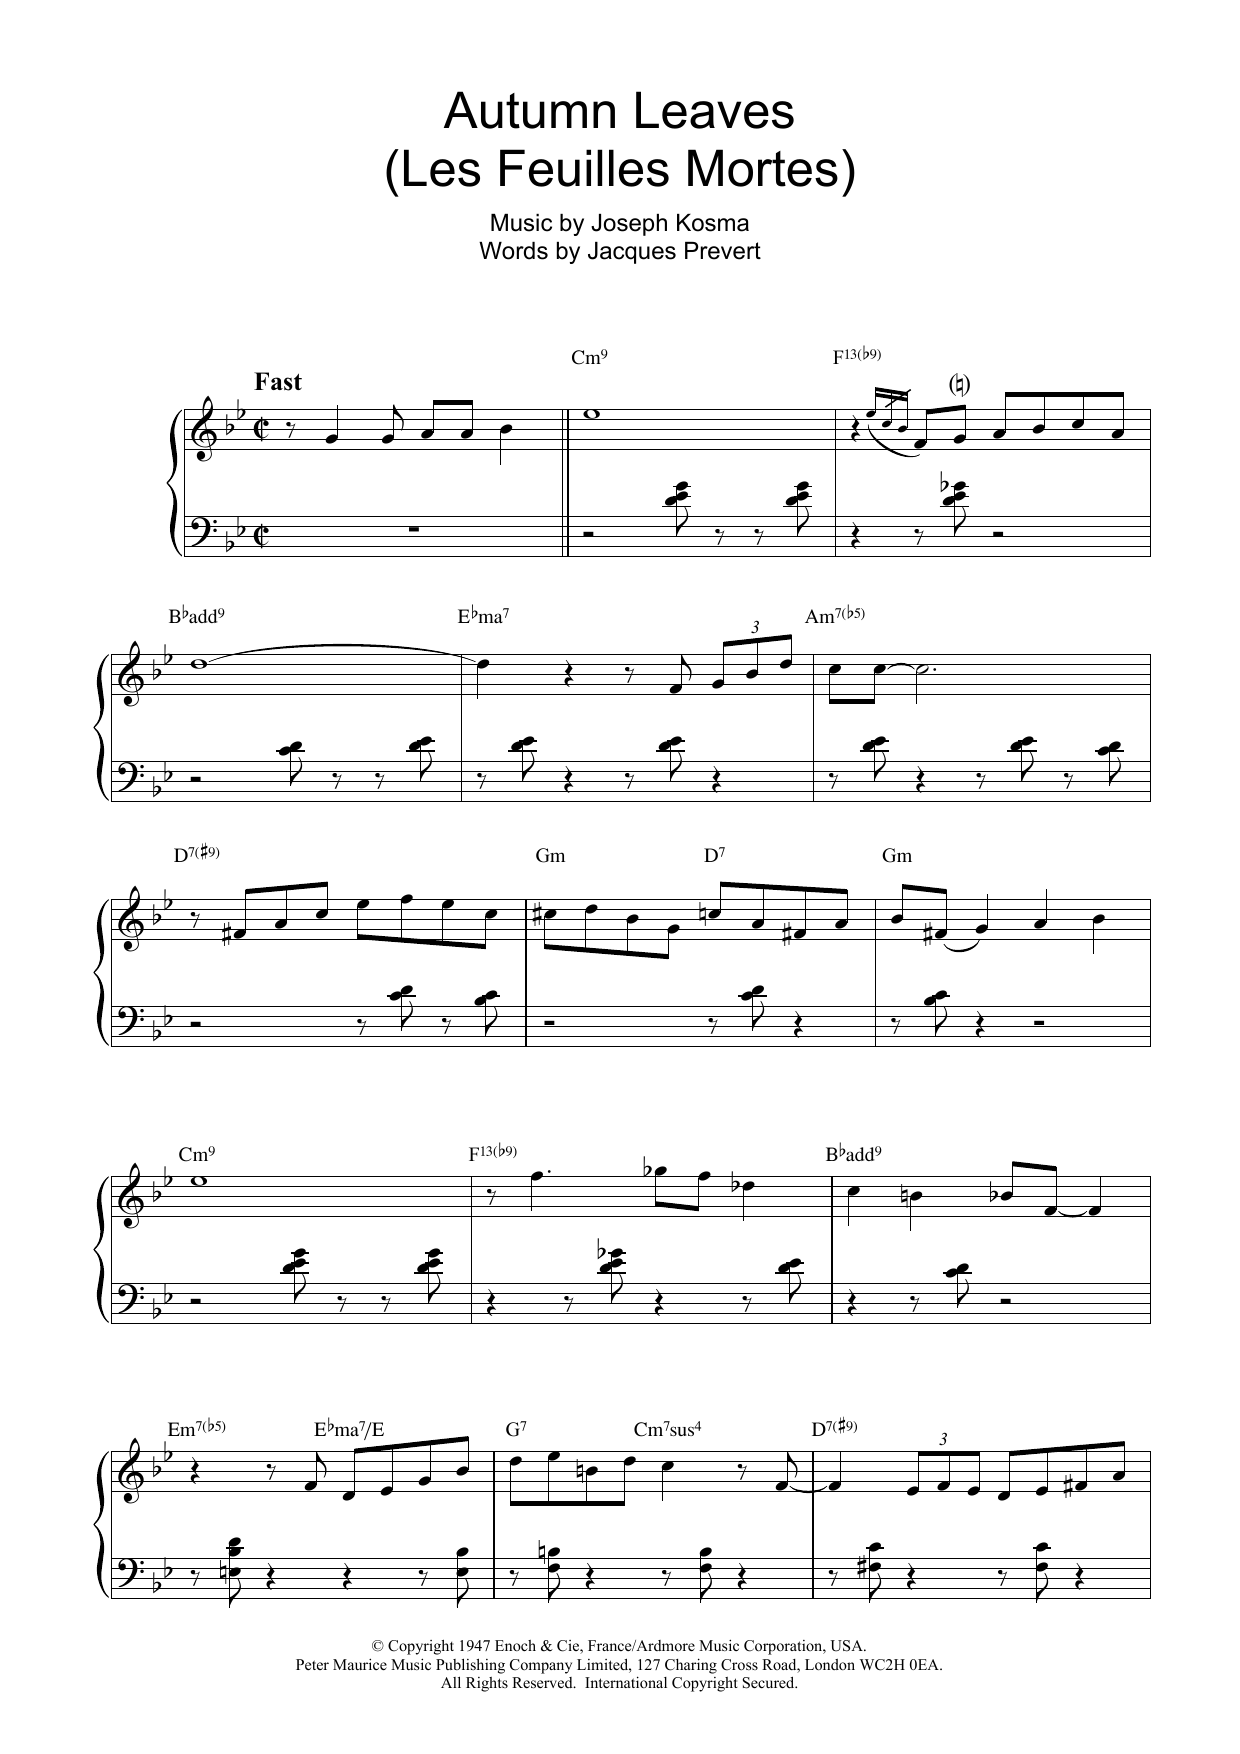 Bill Evans Autumn Leaves (Les Feuilles Mortes) sheet music notes printable PDF score